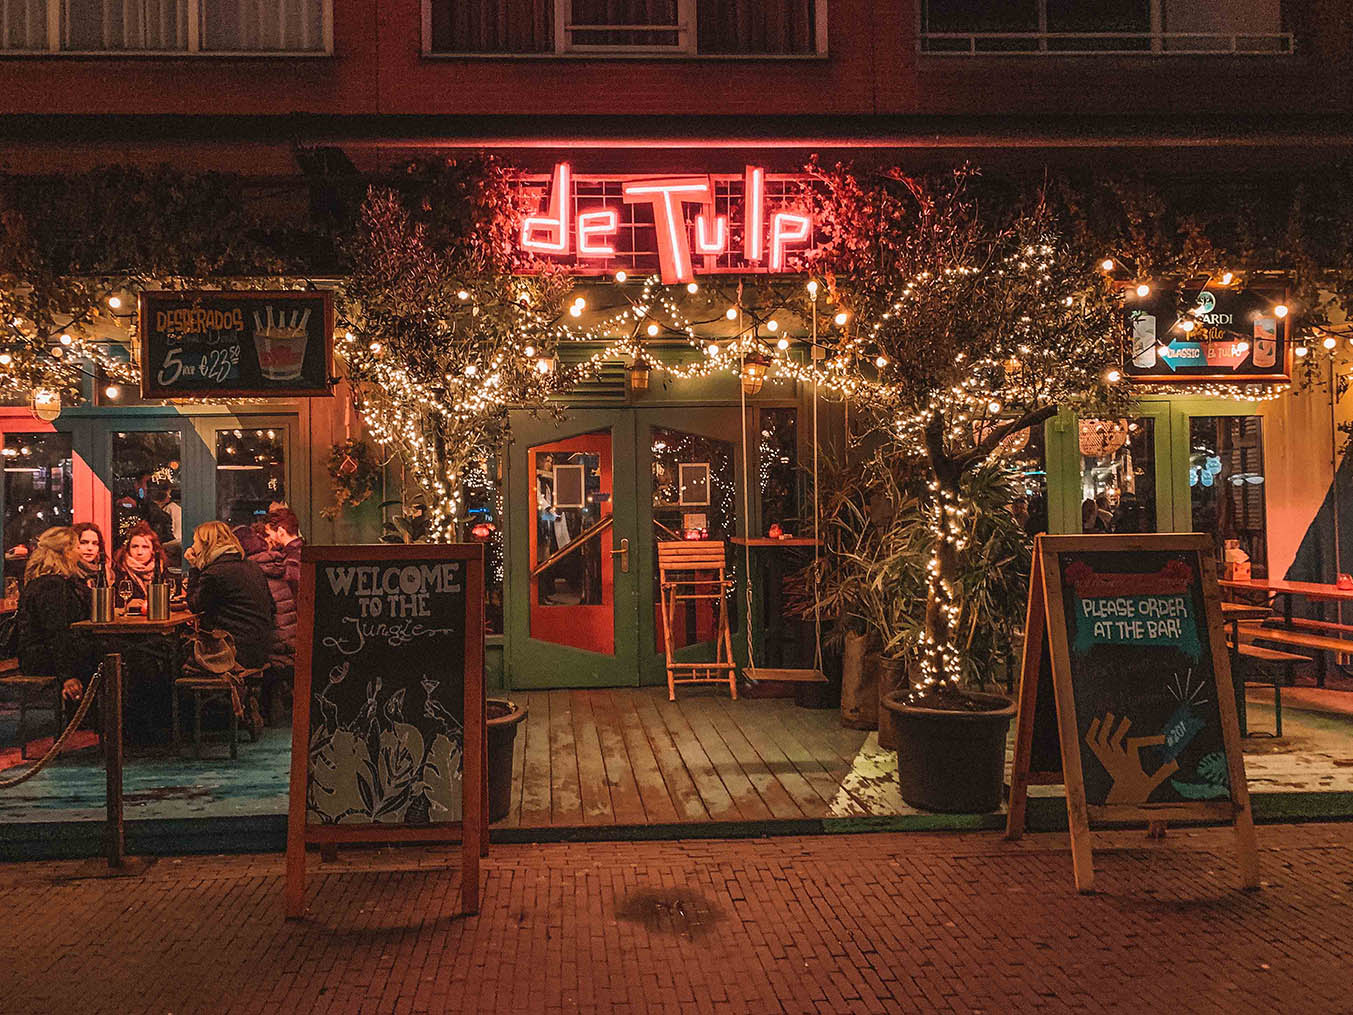 dicas Amsterdam onde comer e beber: de tulp